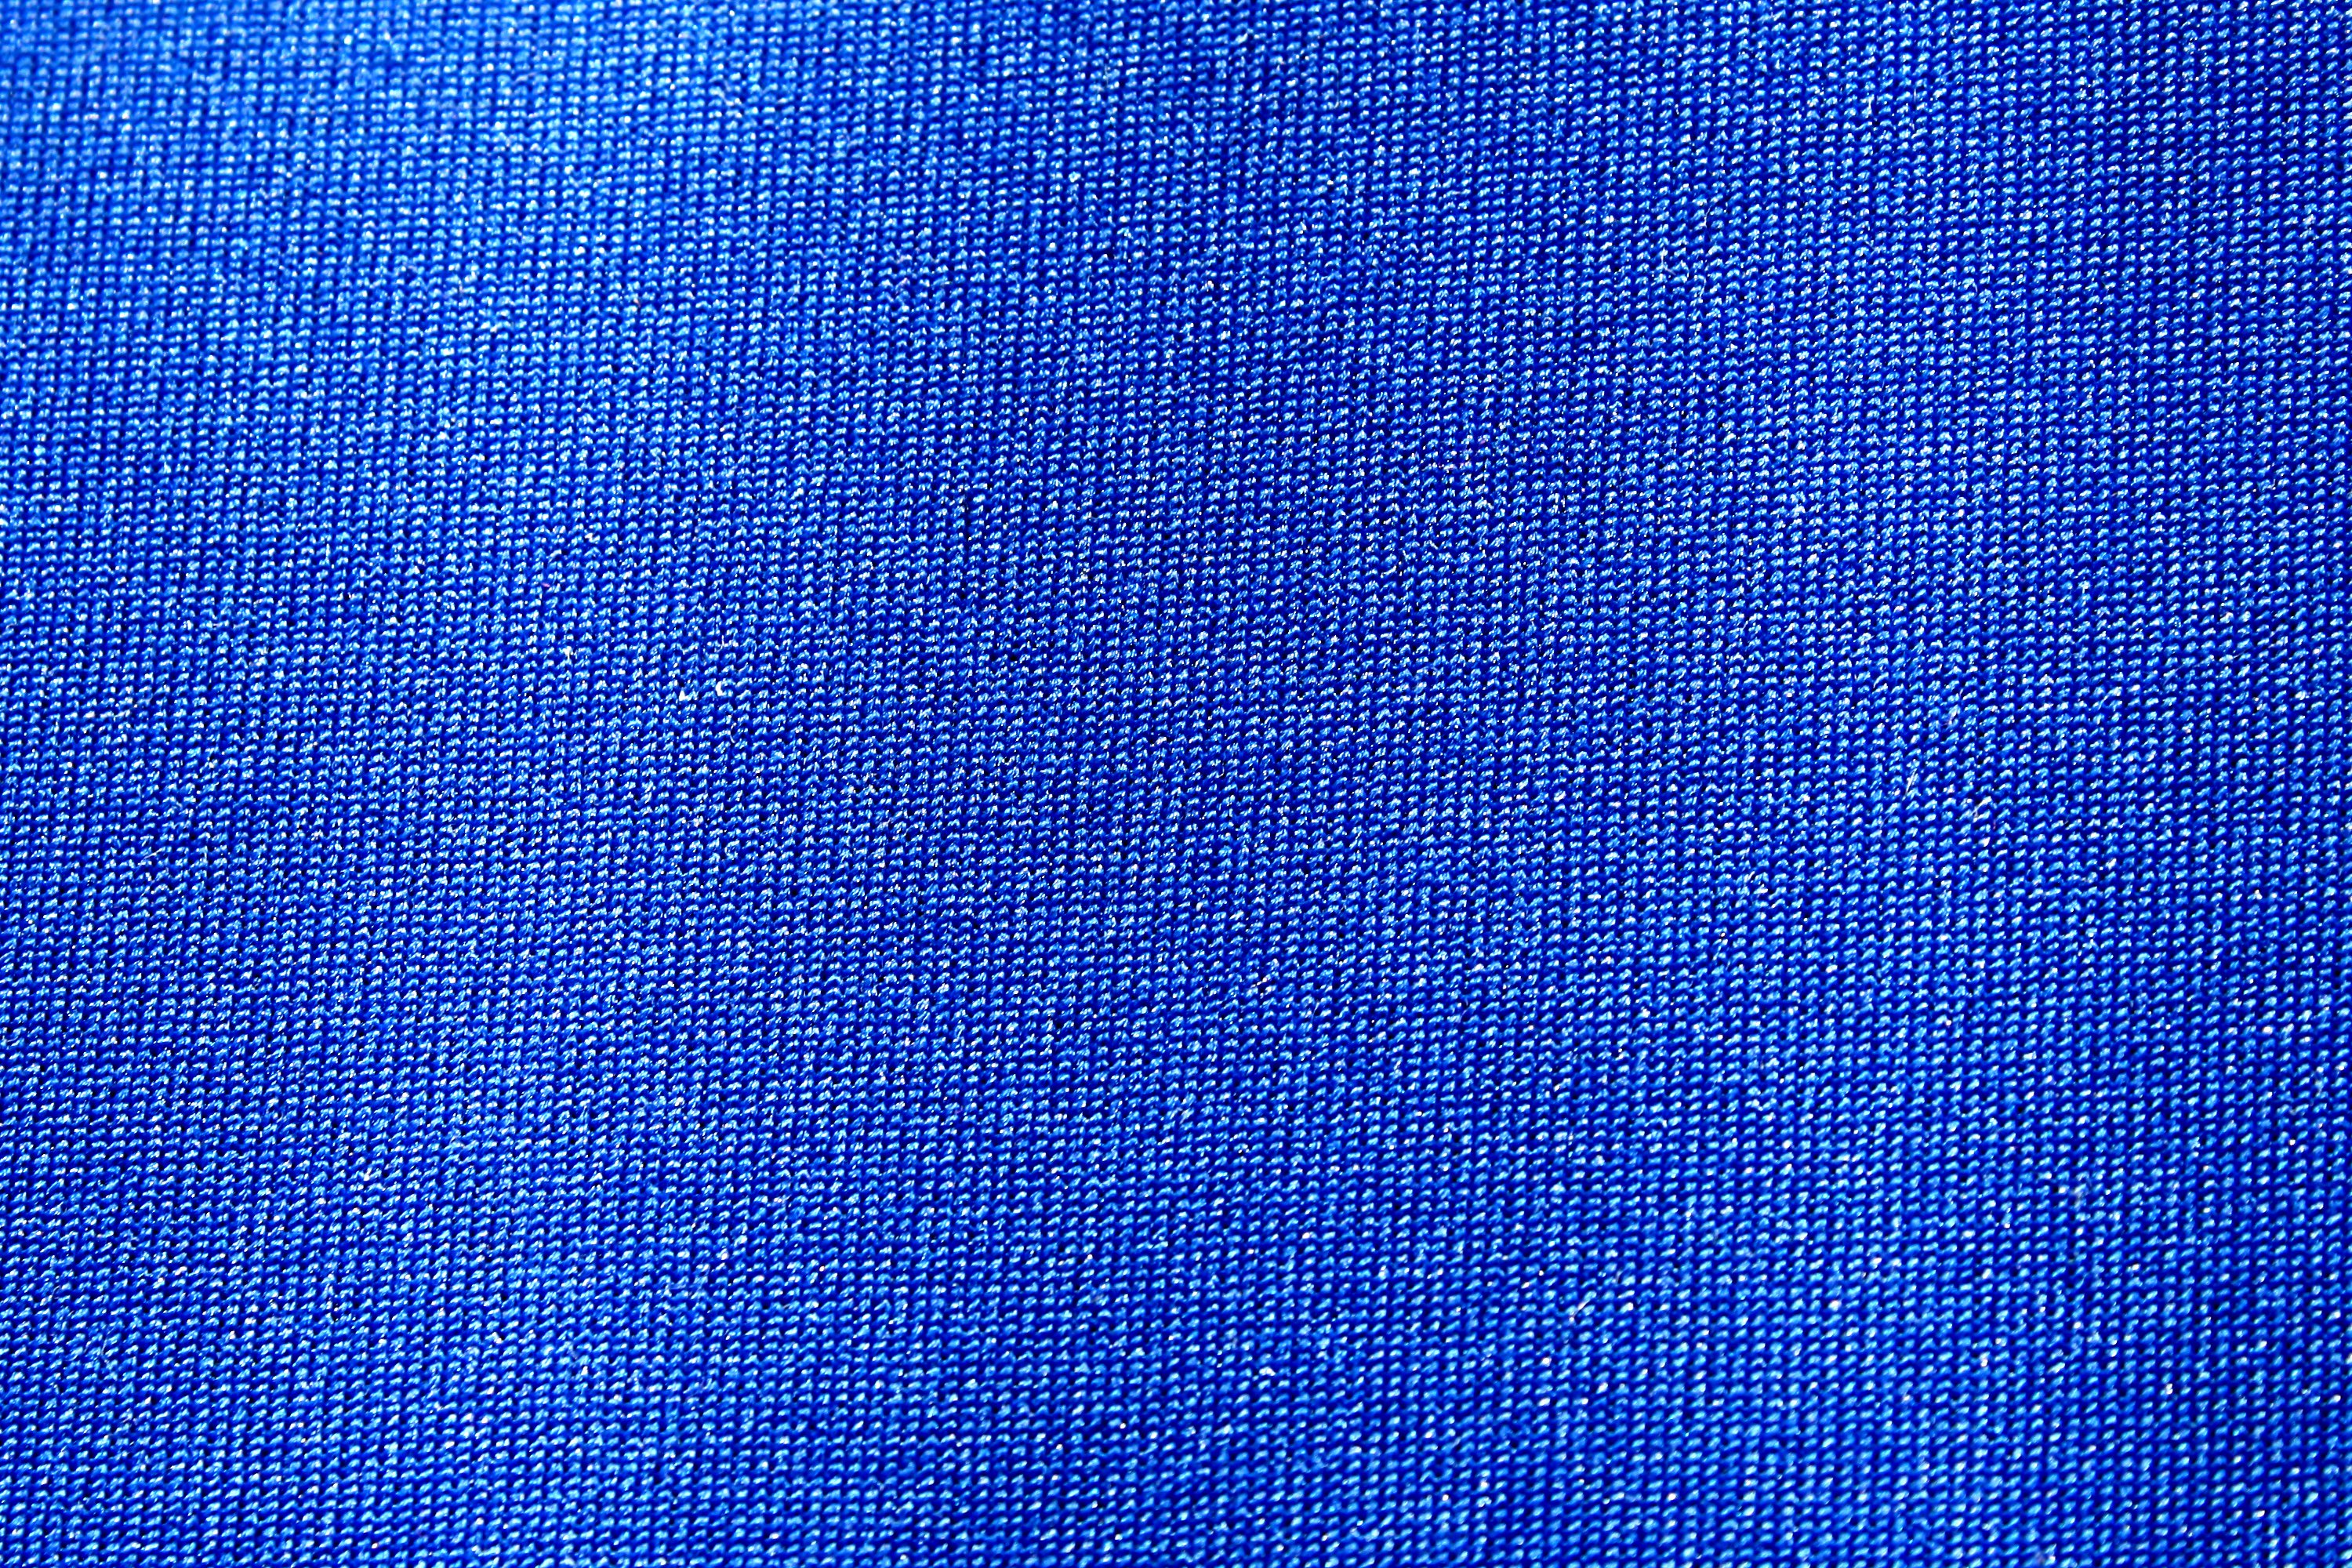 Light Blue Fabric Texture Seamless